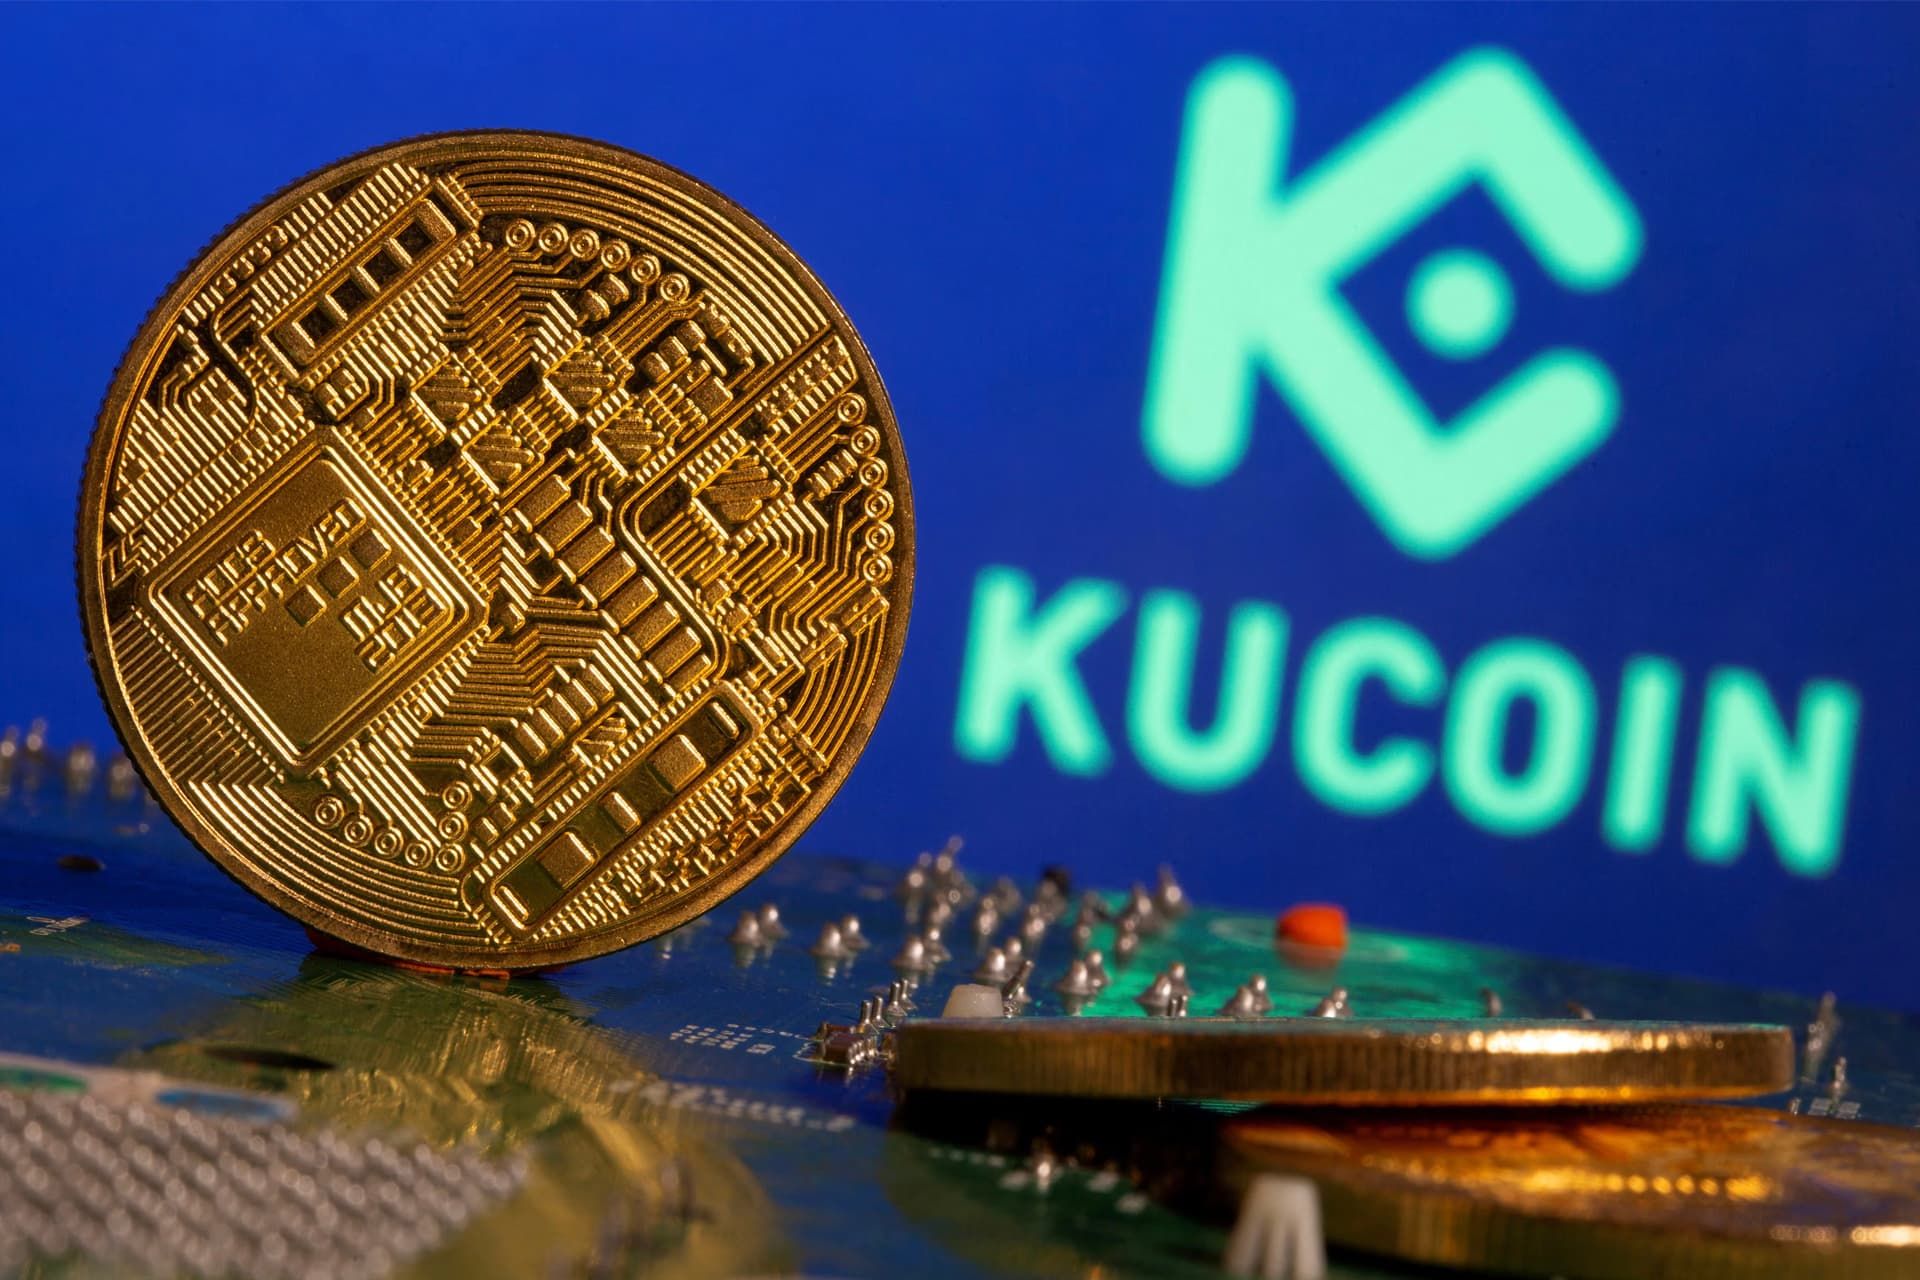 لوگو صرافی کوکوین / KuCoin در کنار سکه رمزارز